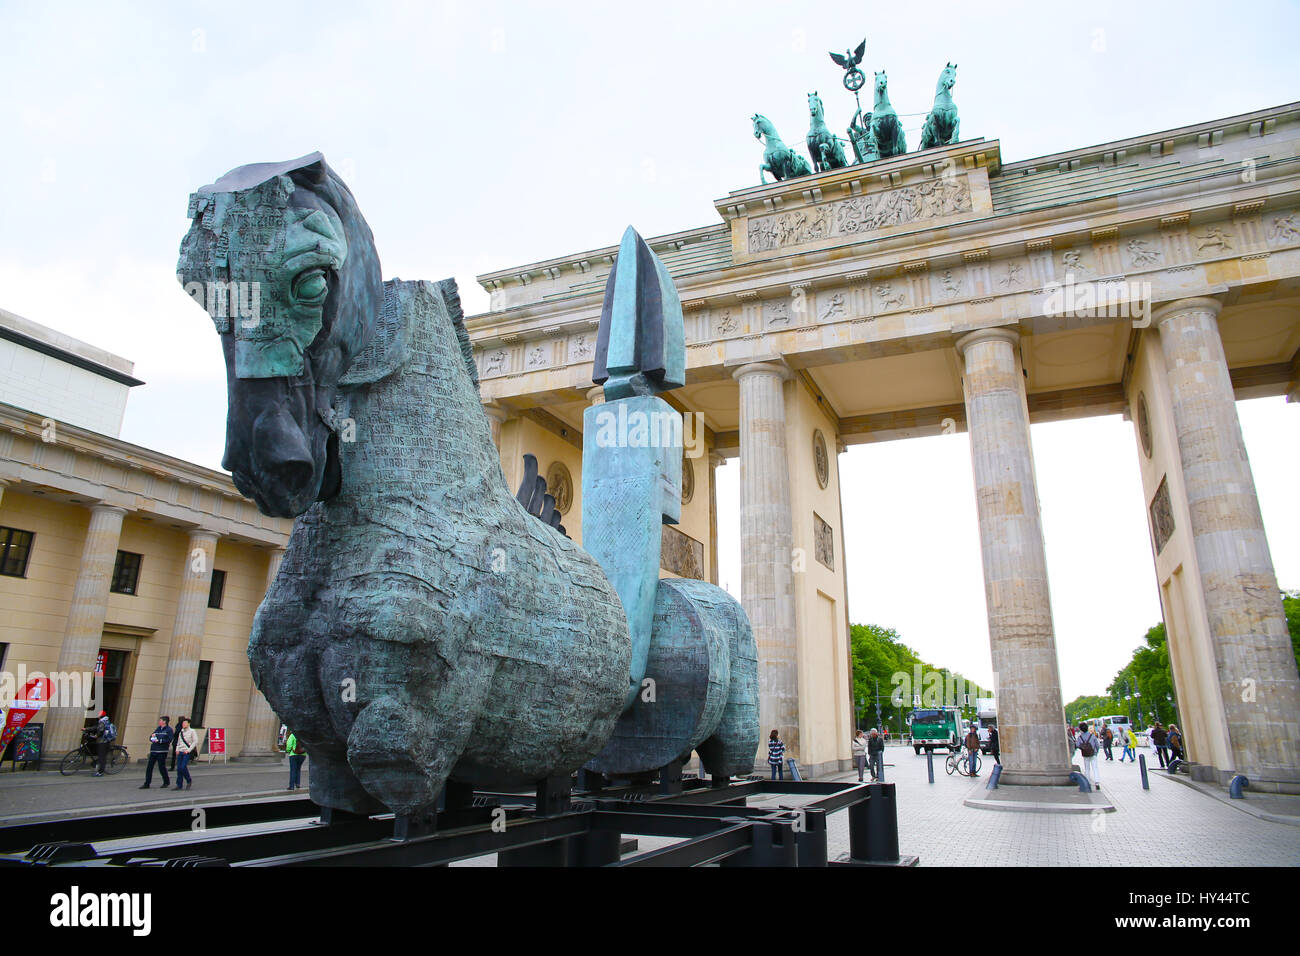 Berlin, Deutschland, 7. Mai 2015: Open-Air-Skulpturen-Ausstellung "Lapidarium" von Gustavo Aceves. Stockfoto